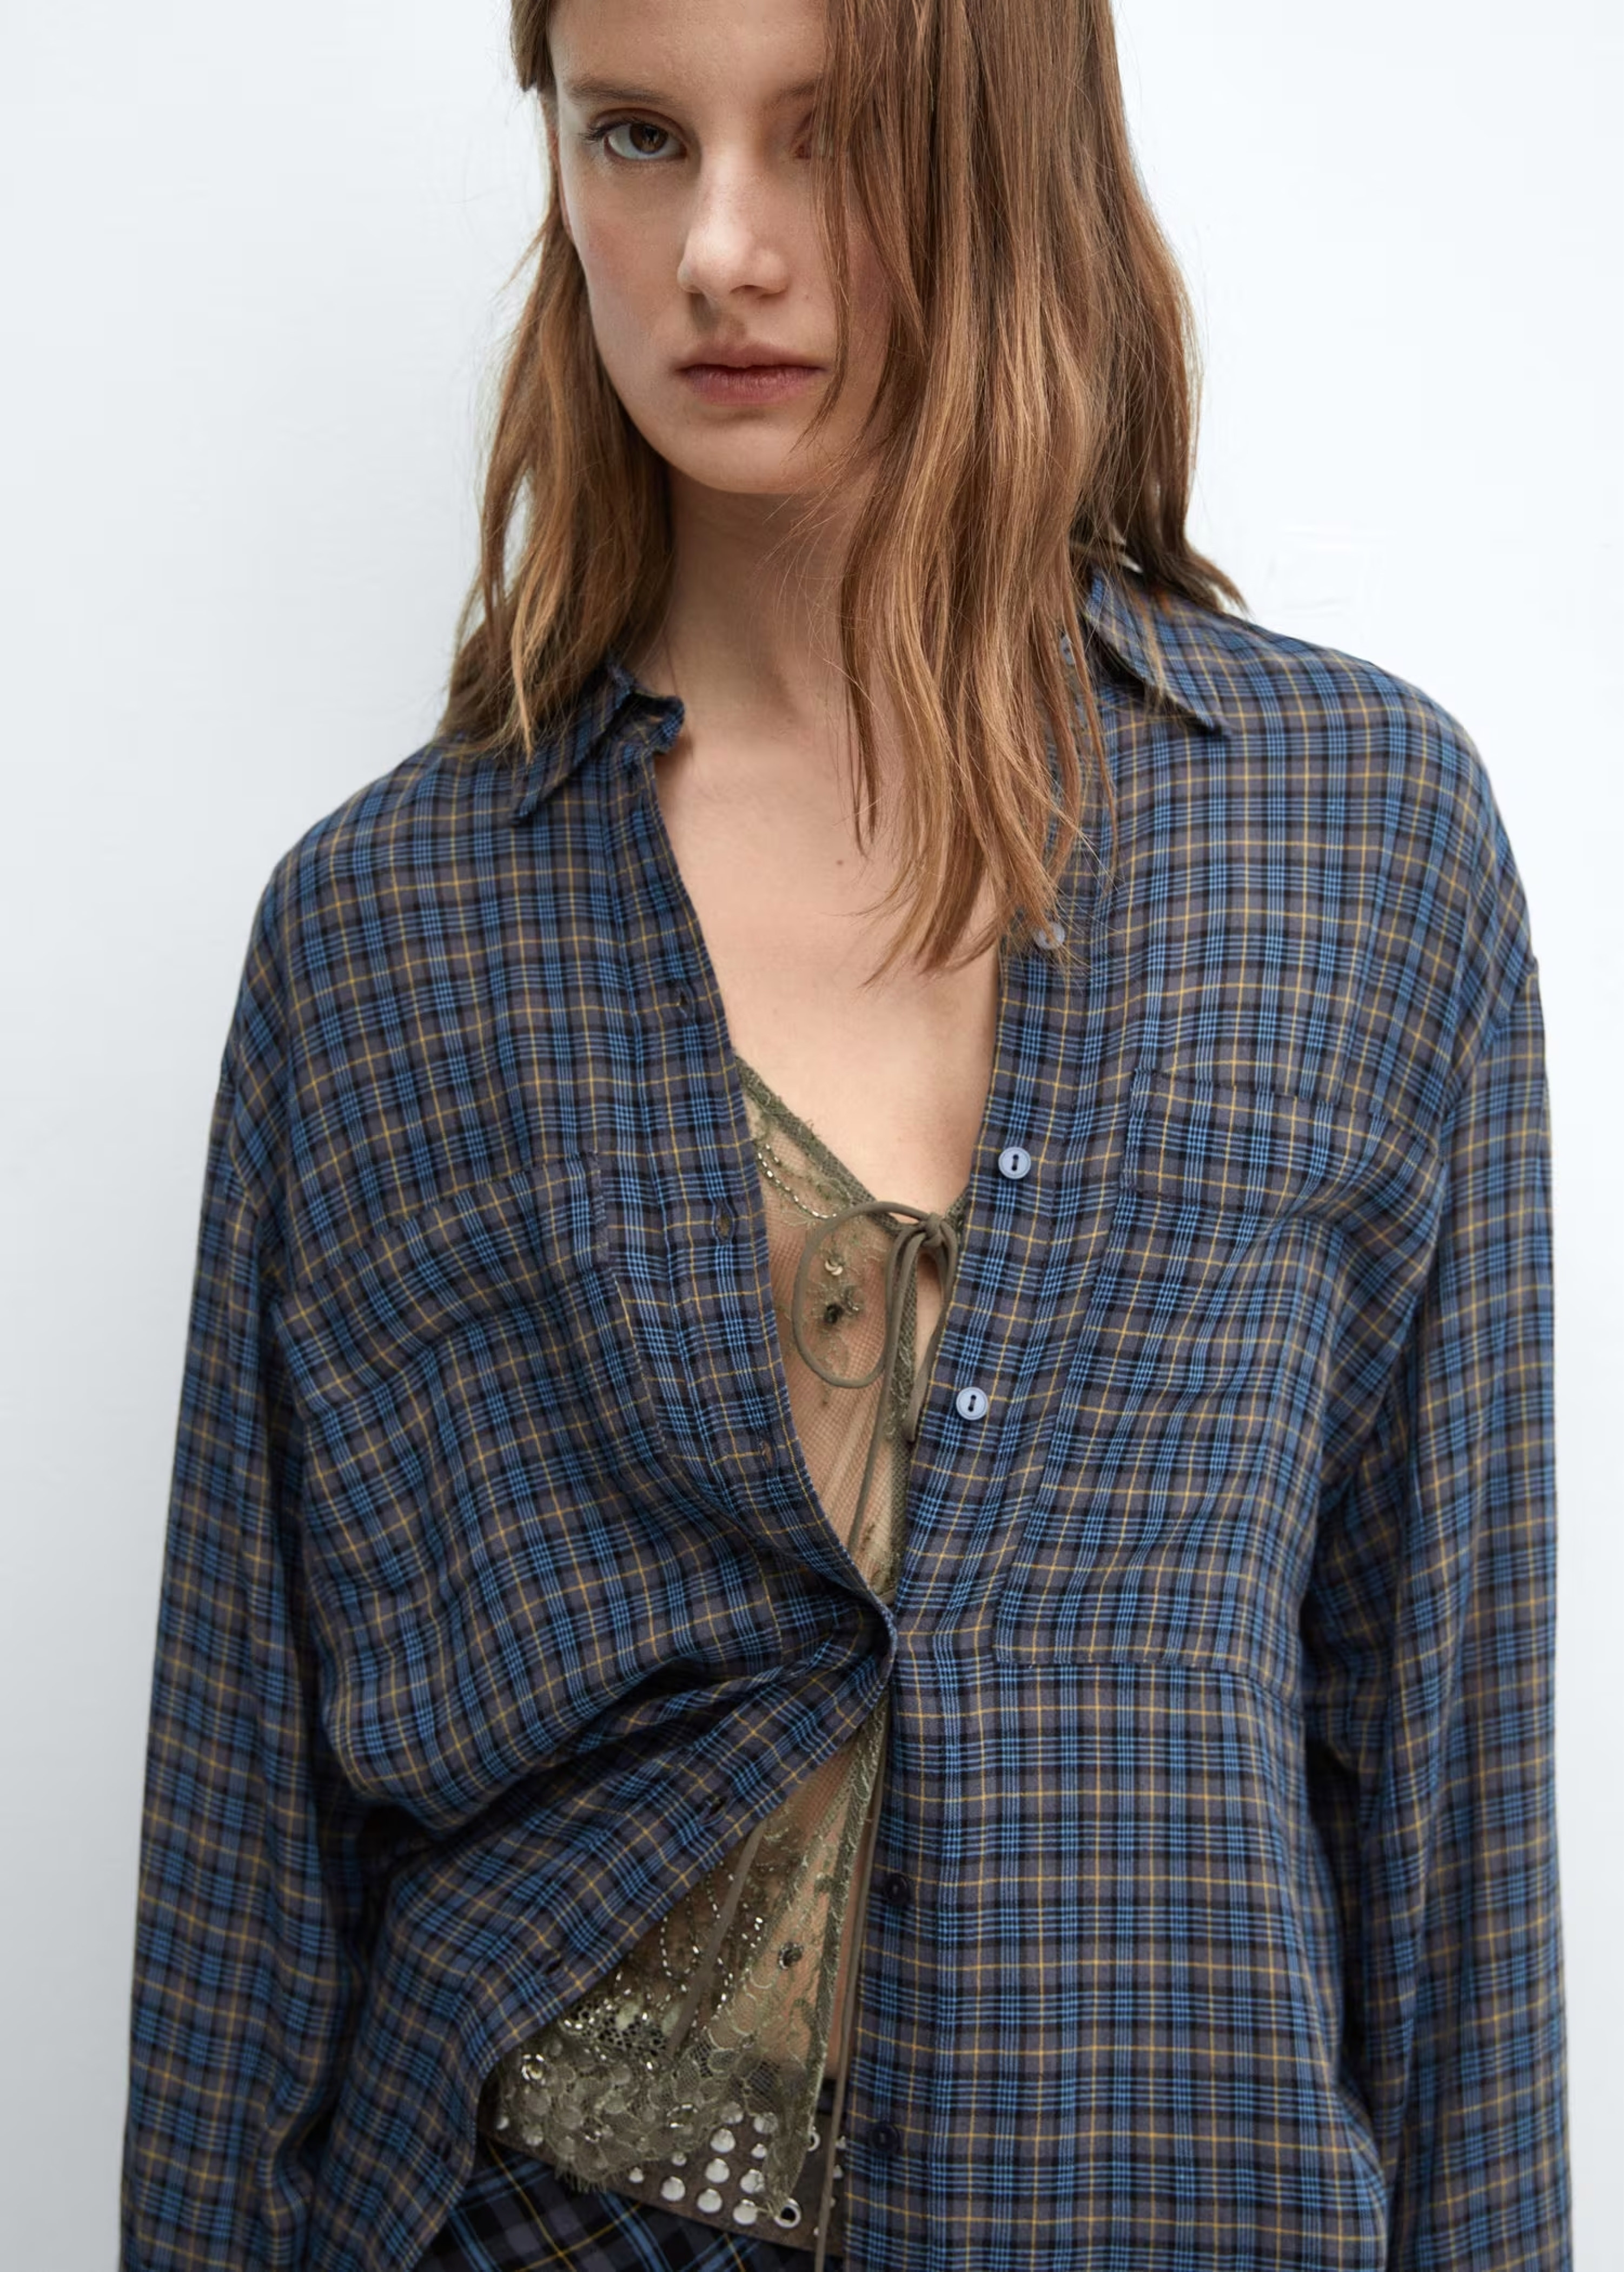 Mujer usando una camisa de cuadros oversize de estilo grunge